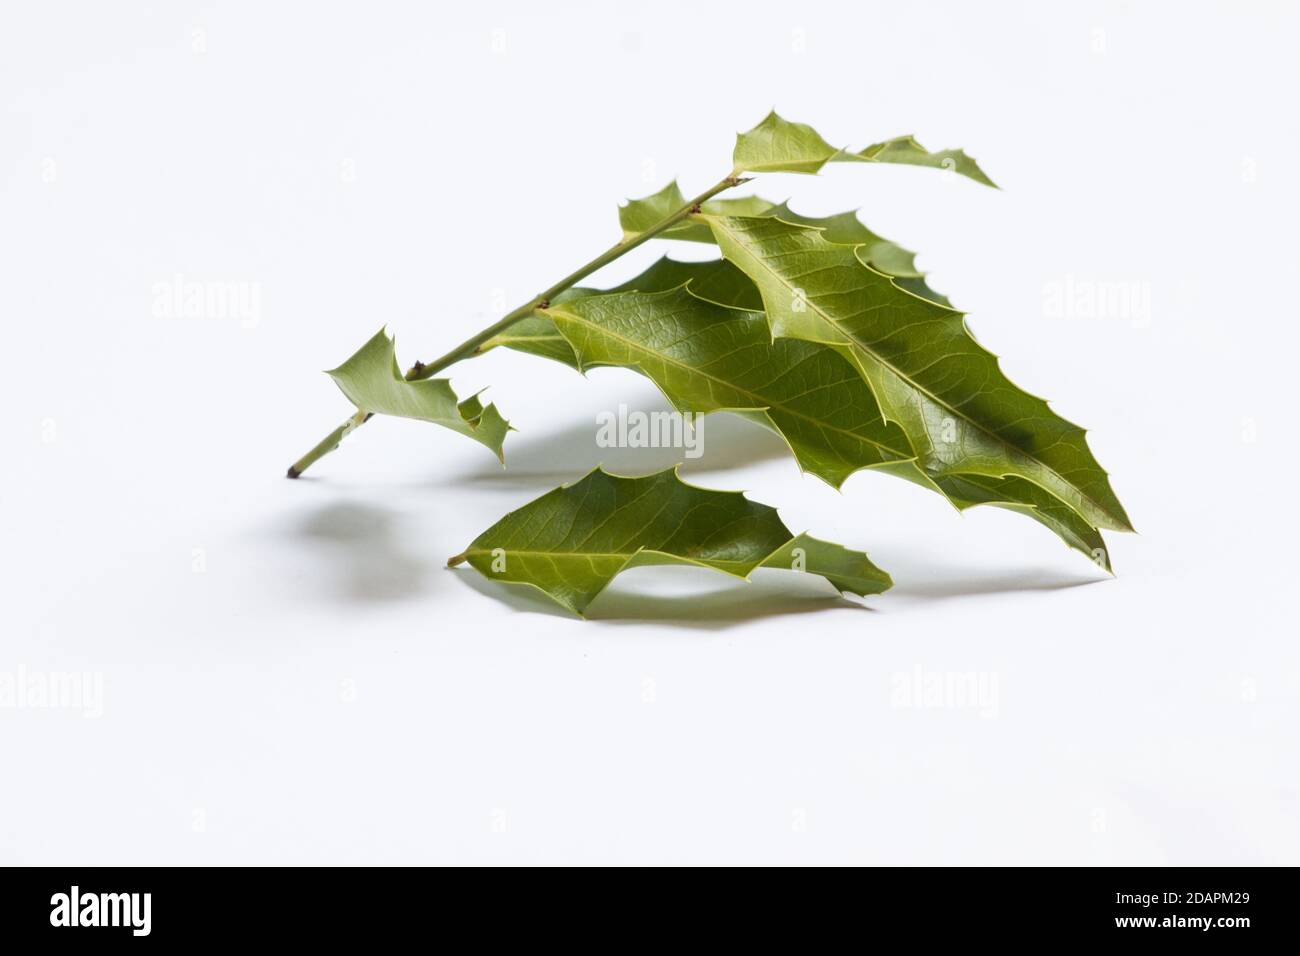 Maytenus ilicifolia medicinal plant isolated on white background Stock Photo